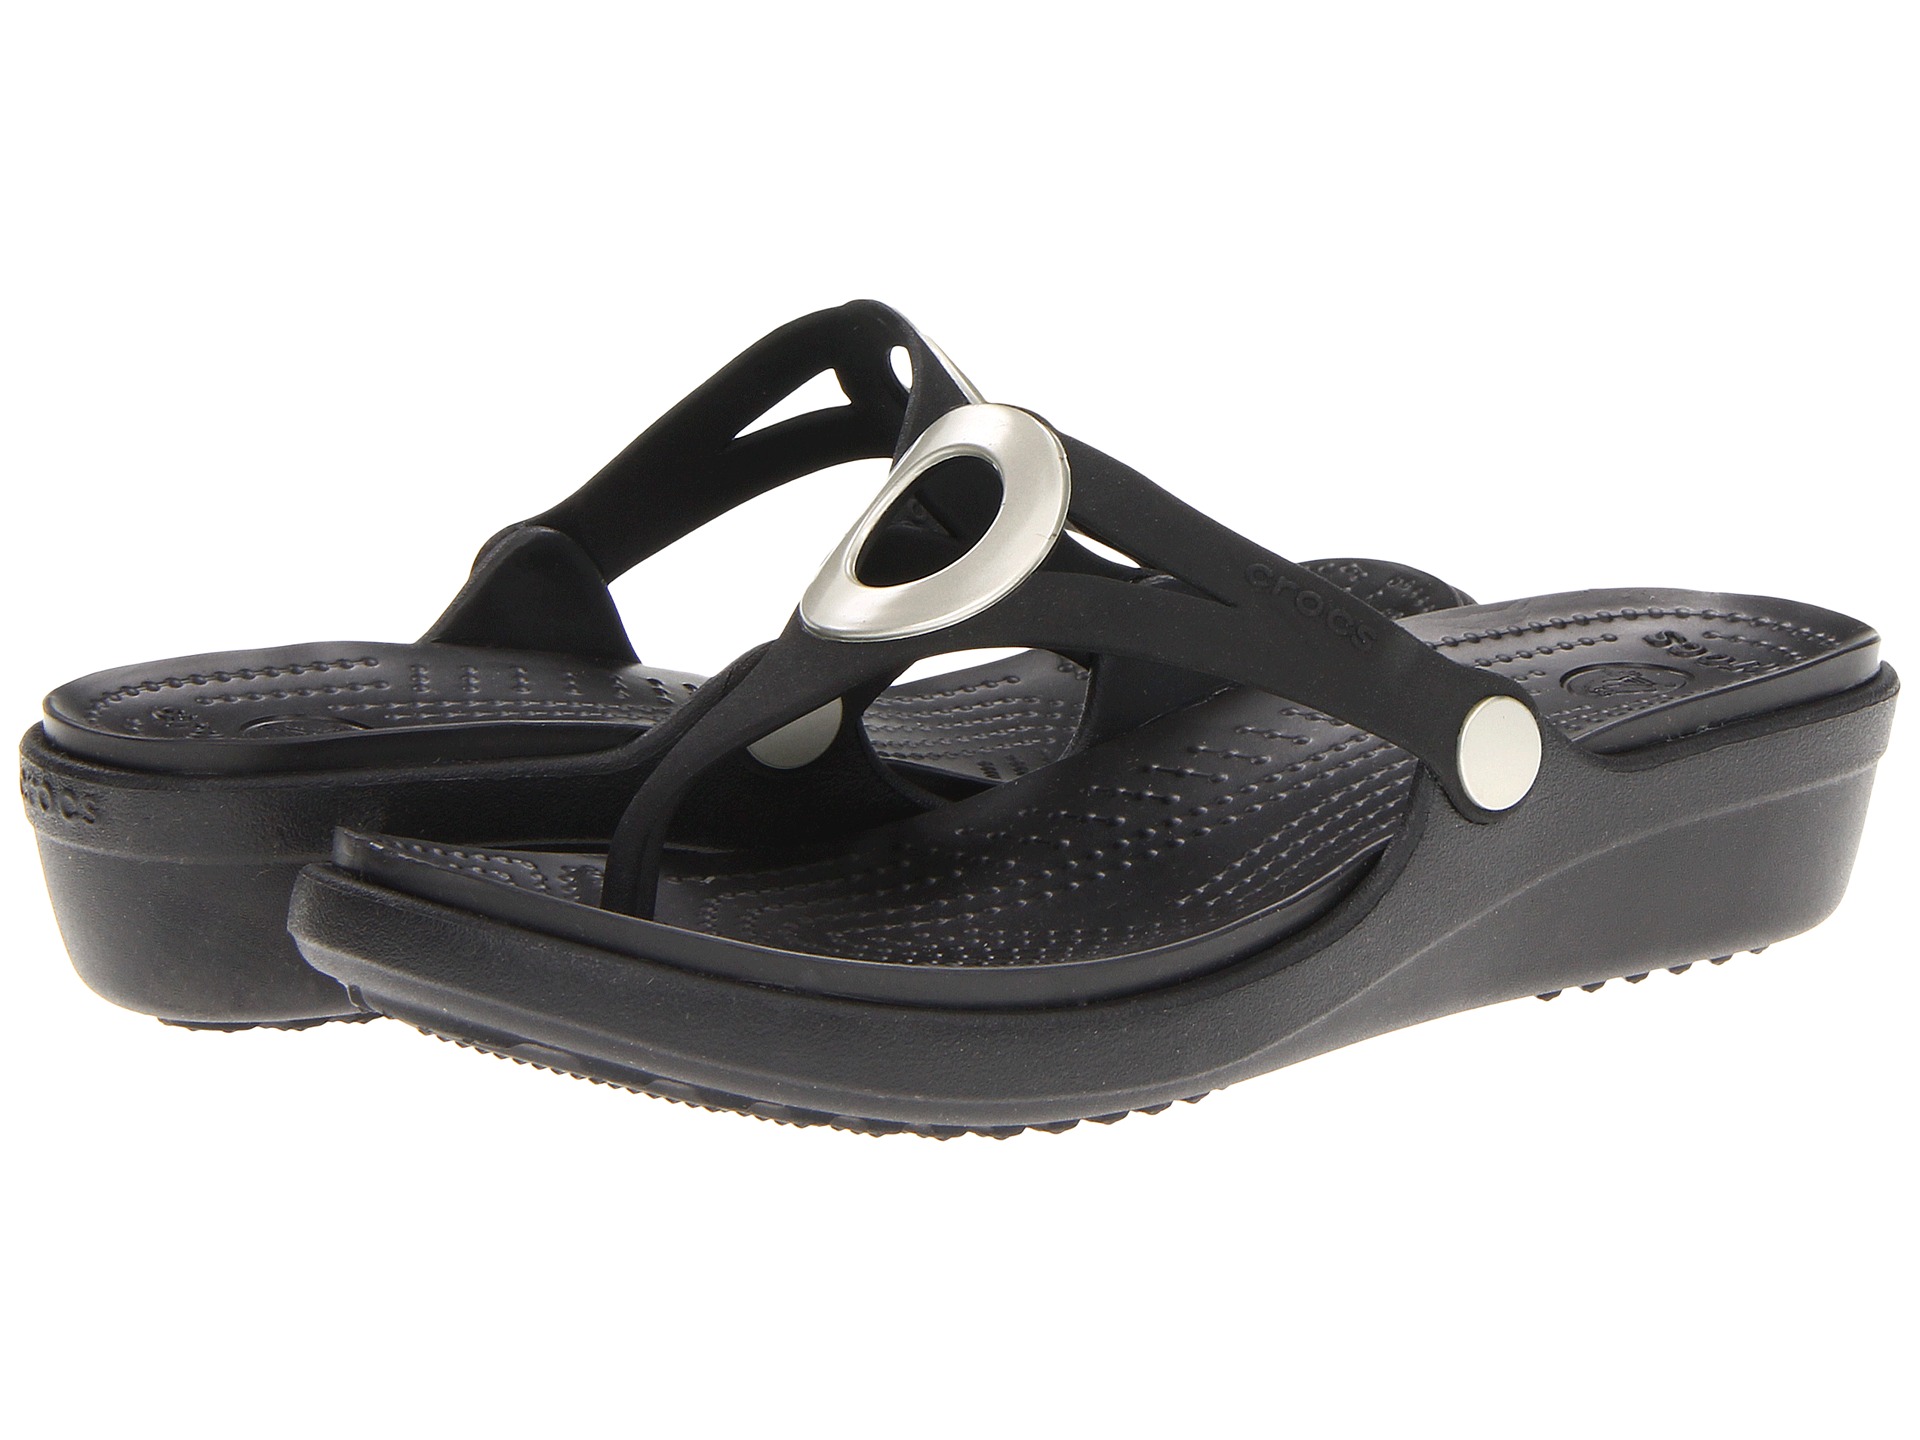 Crocs Sanrah Wedge Flip Flop | Shipped Free at Zappos